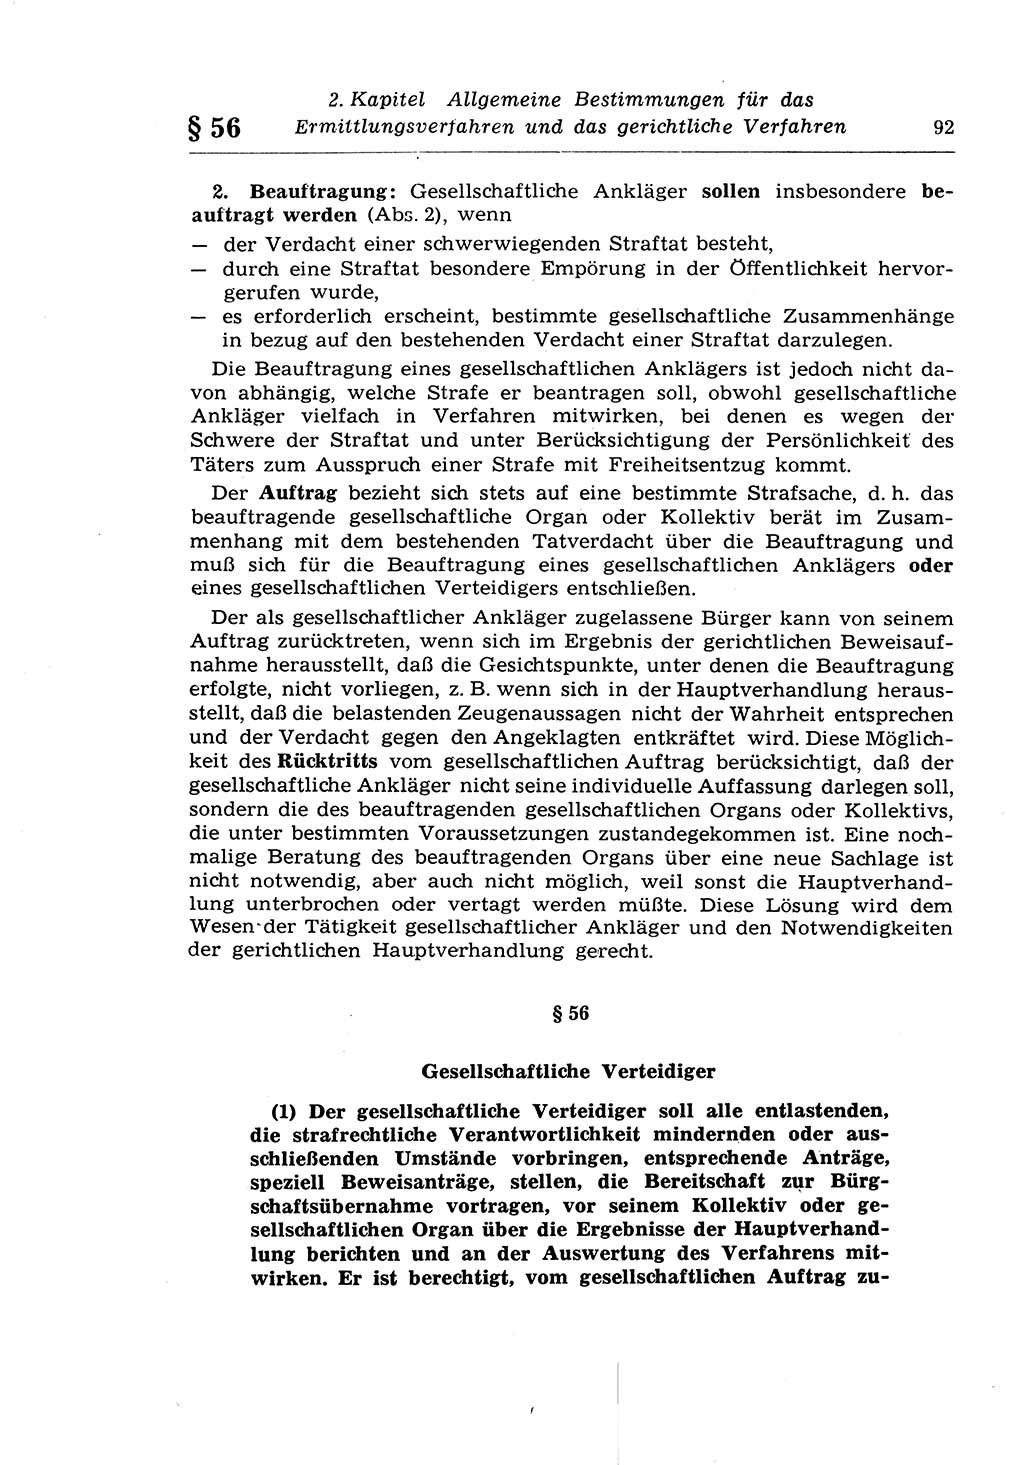 Strafprozeßrecht der DDR (Deutsche Demokratische Republik), Lehrkommentar zur Strafprozeßordnung (StPO) 1968, Seite 92 (Strafprozeßr. DDR Lehrkomm. StPO 19688, S. 92)